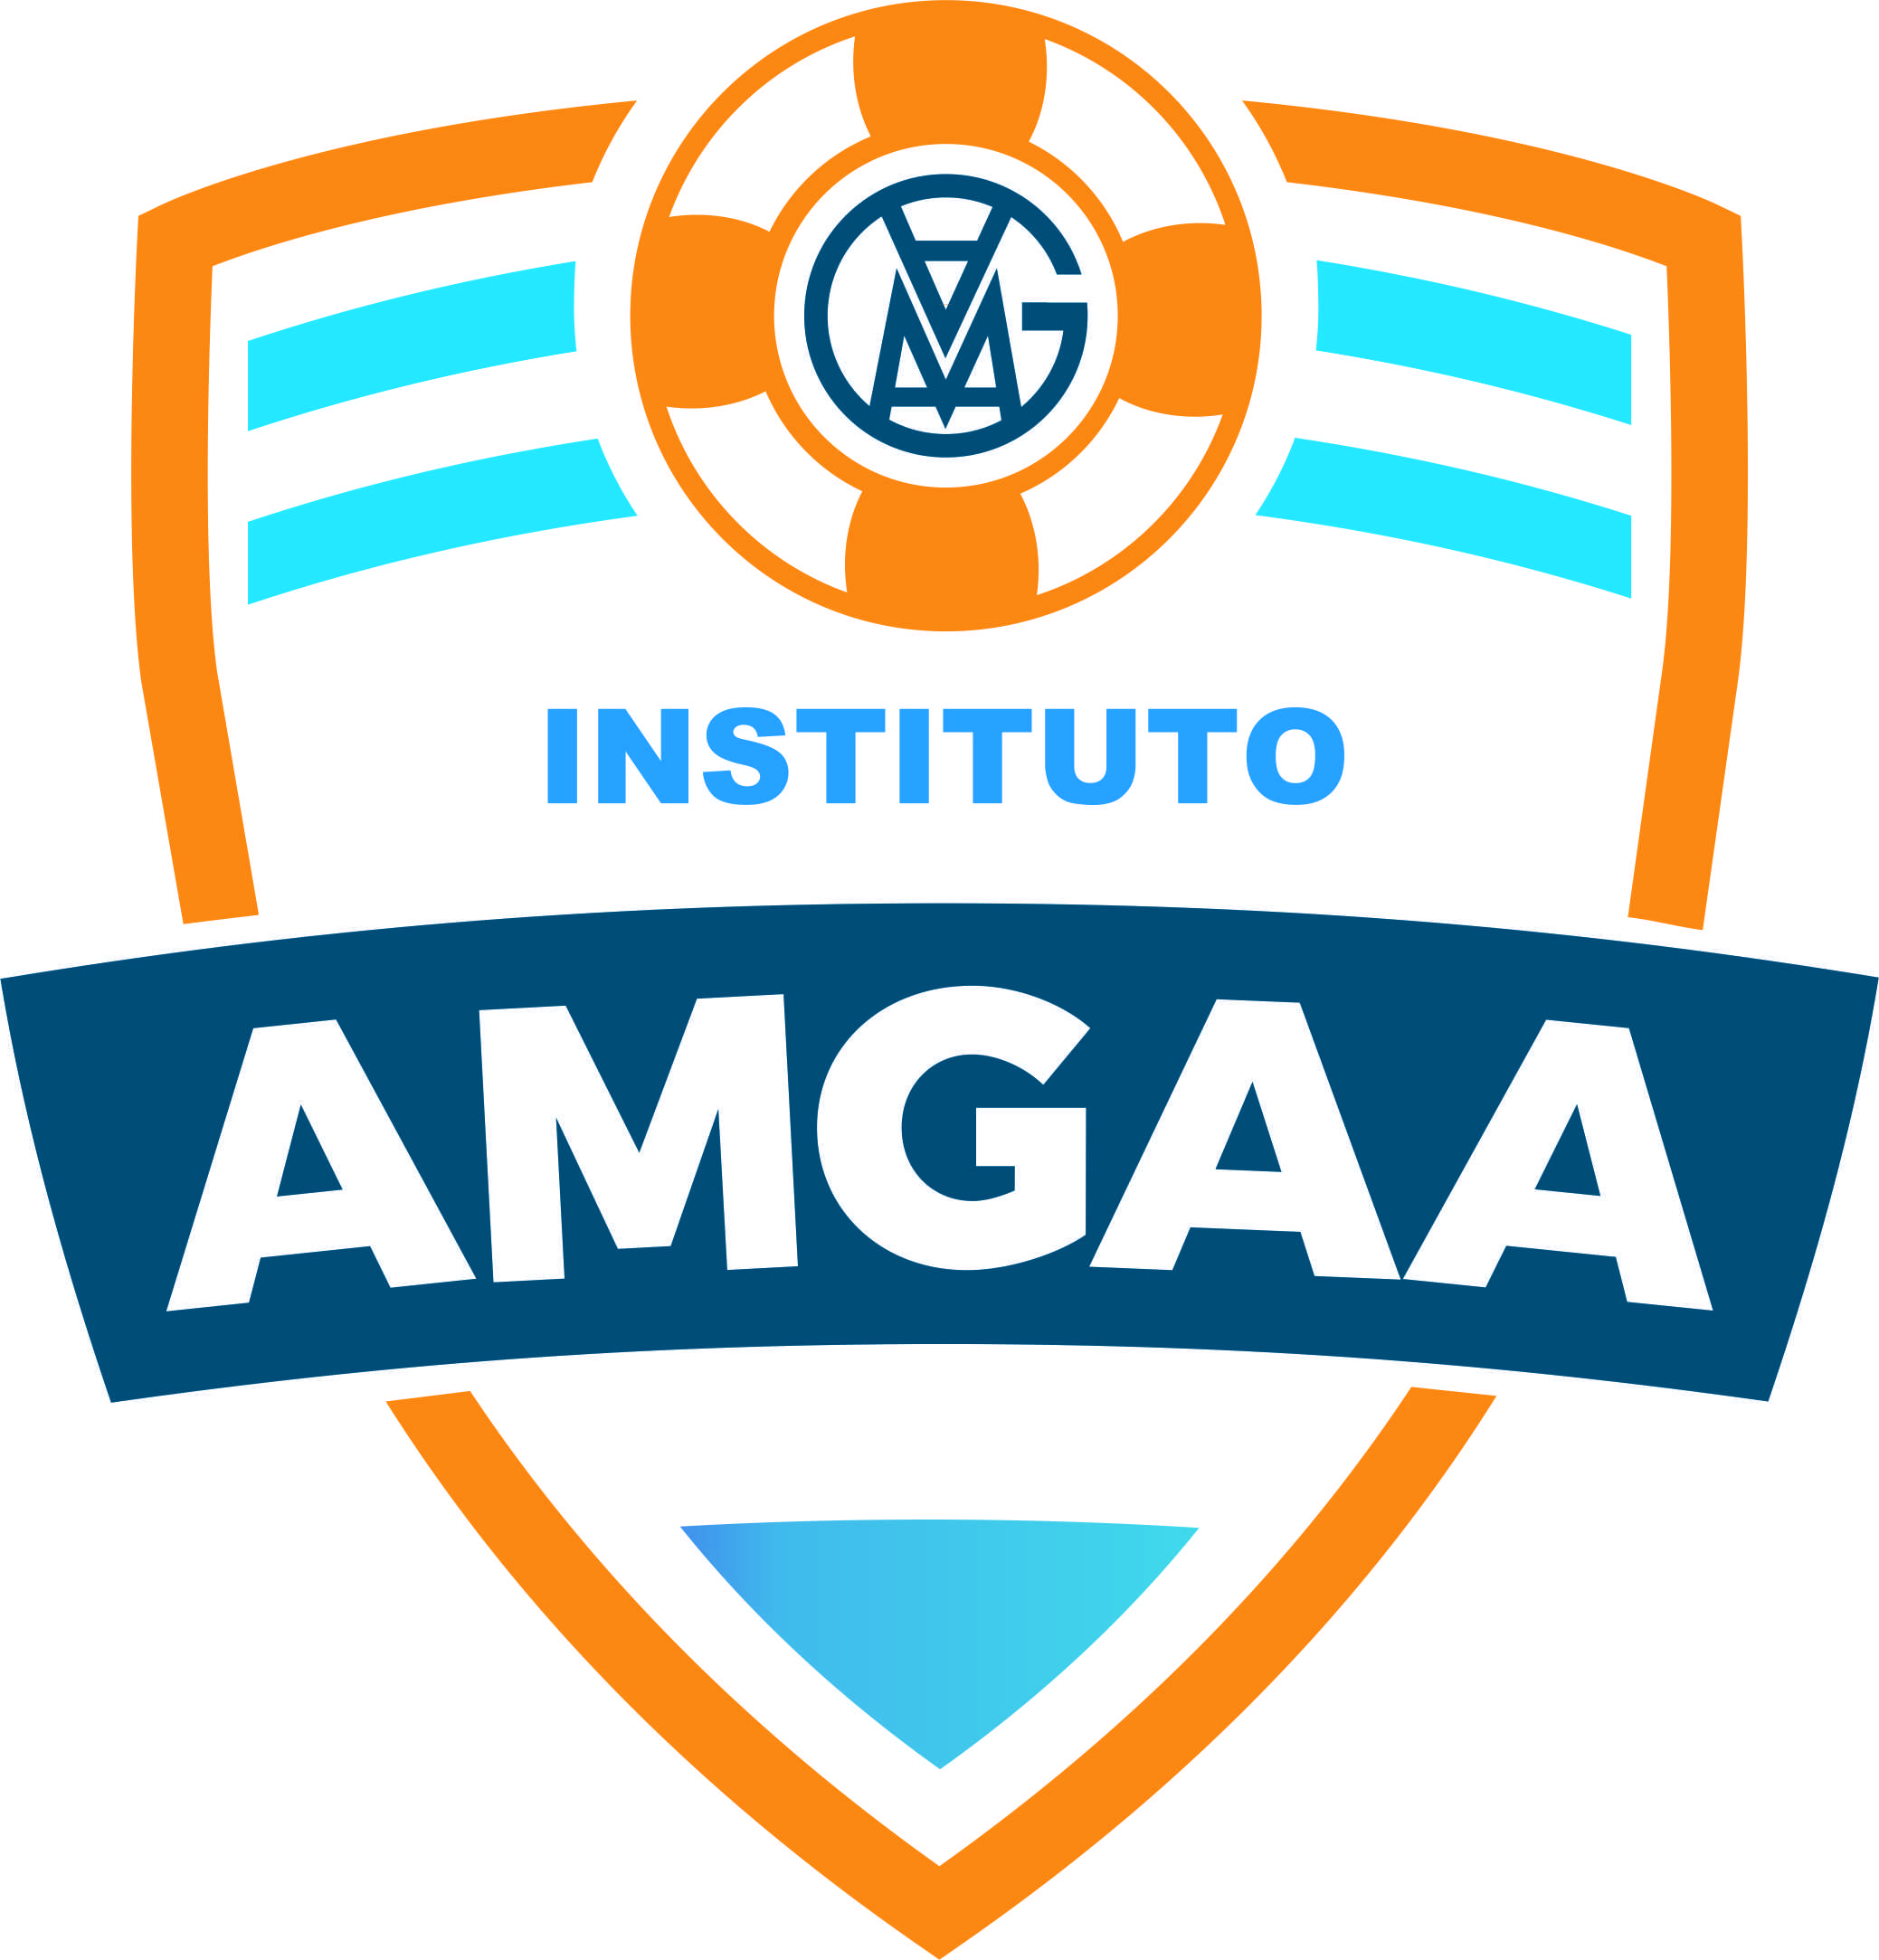 Instituto AMGAA